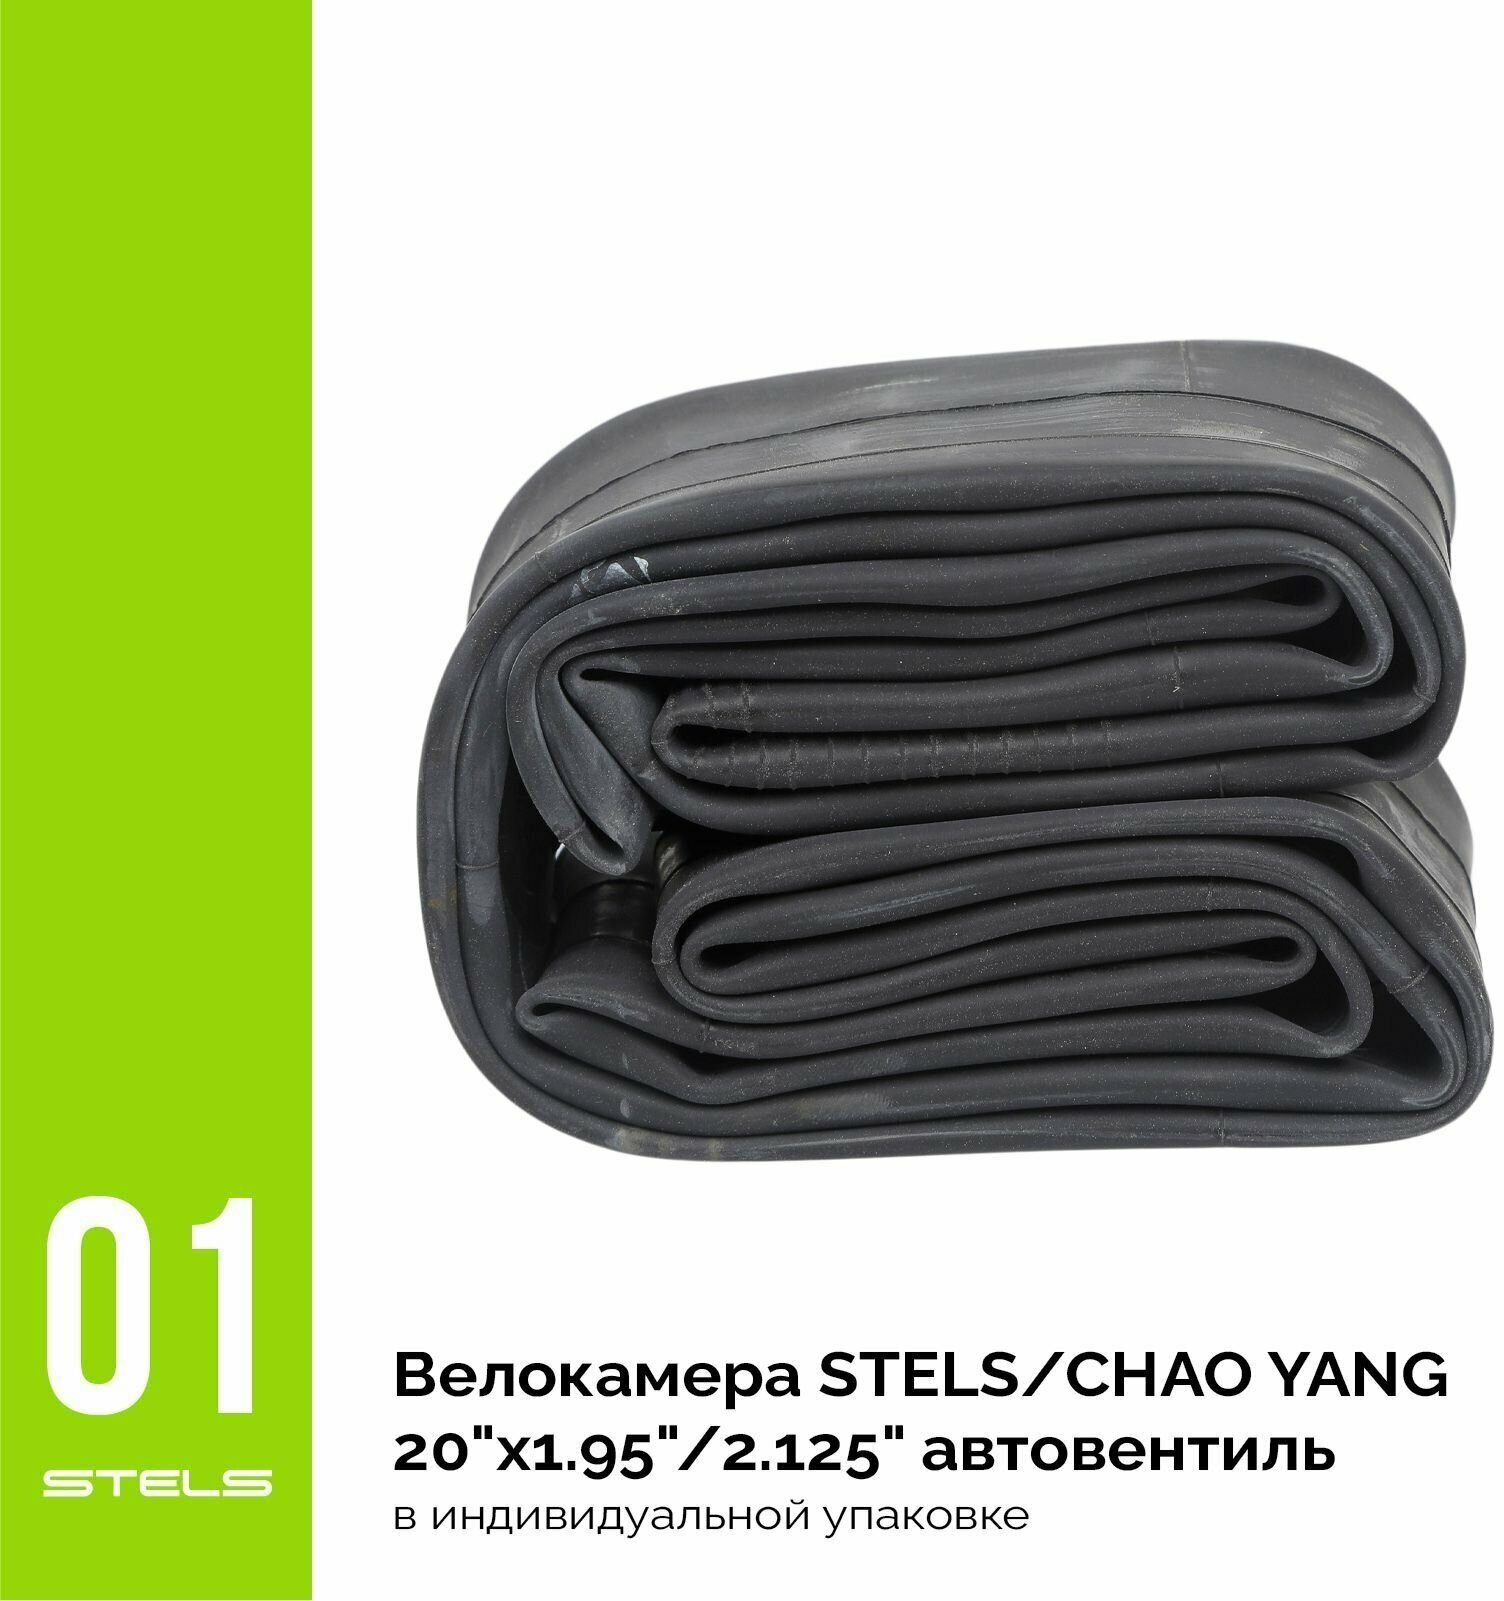 Велокамера STELS/CHAO YANG 20"x1.95"/2.125", автониппель, в индивидуальной упаковке SuperHIT+